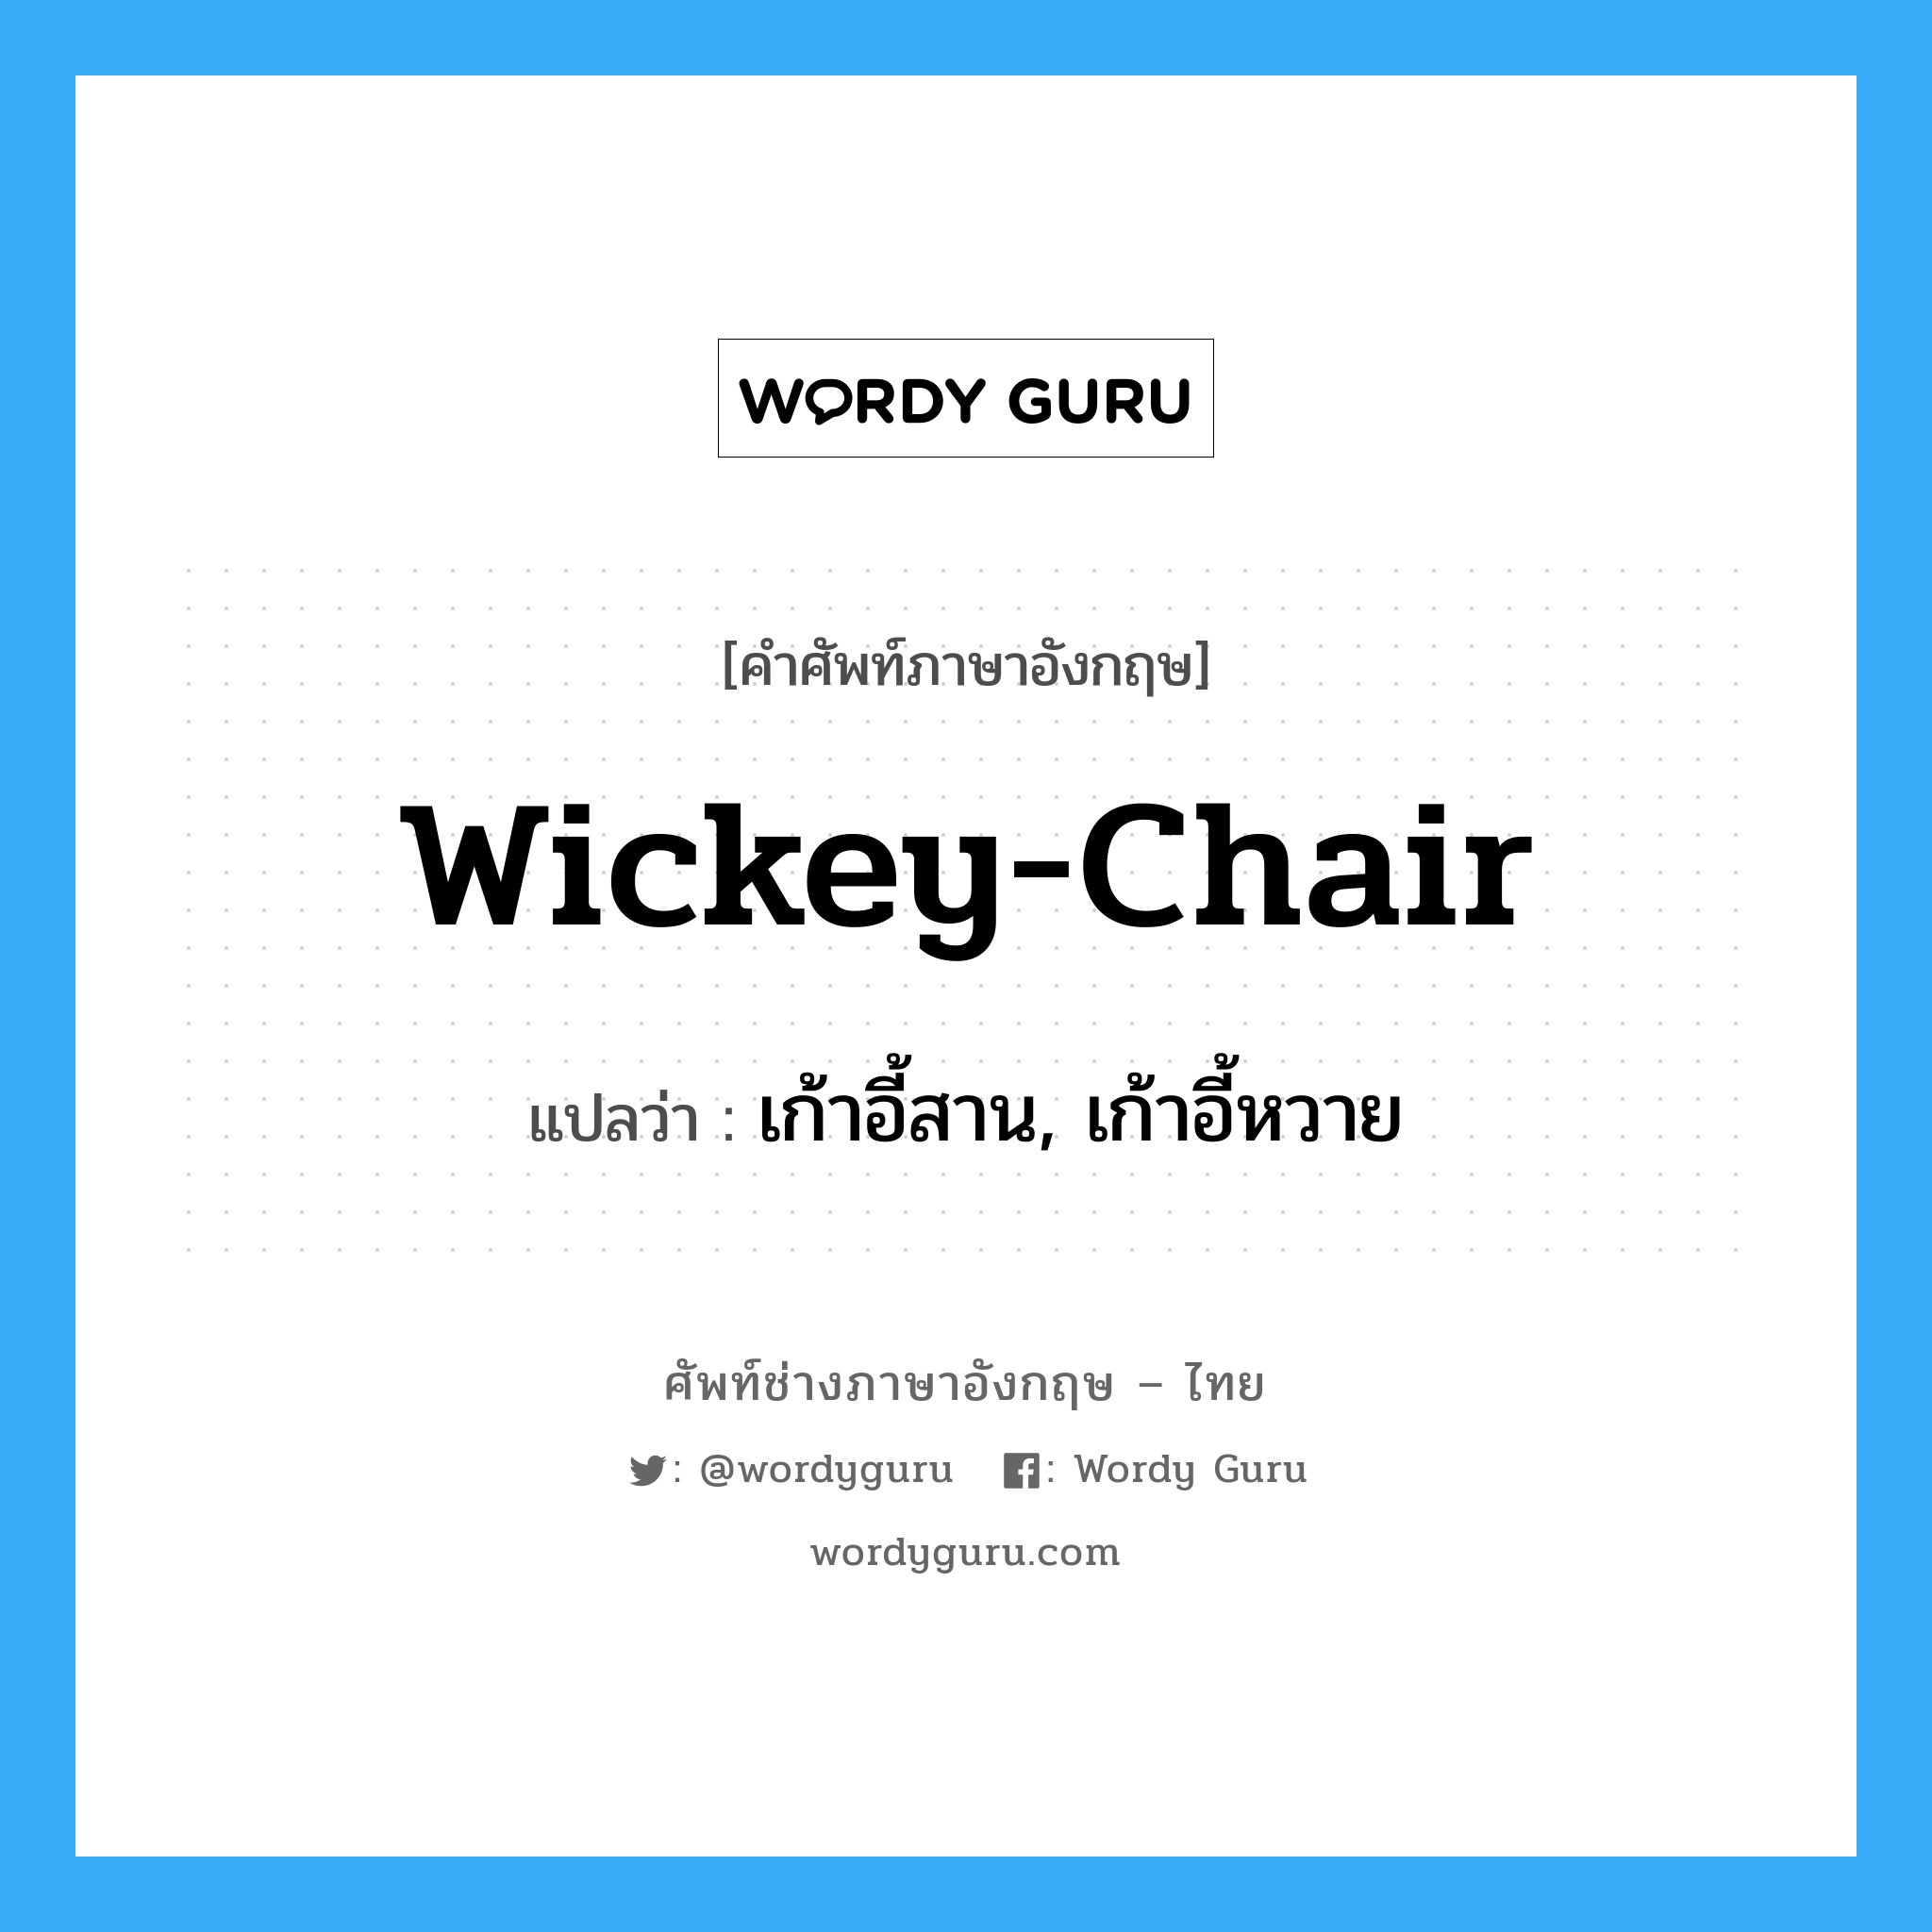 wickey-chair แปลว่า?, คำศัพท์ช่างภาษาอังกฤษ - ไทย wickey-chair คำศัพท์ภาษาอังกฤษ wickey-chair แปลว่า เก้าอี้สาน, เก้าอี้หวาย